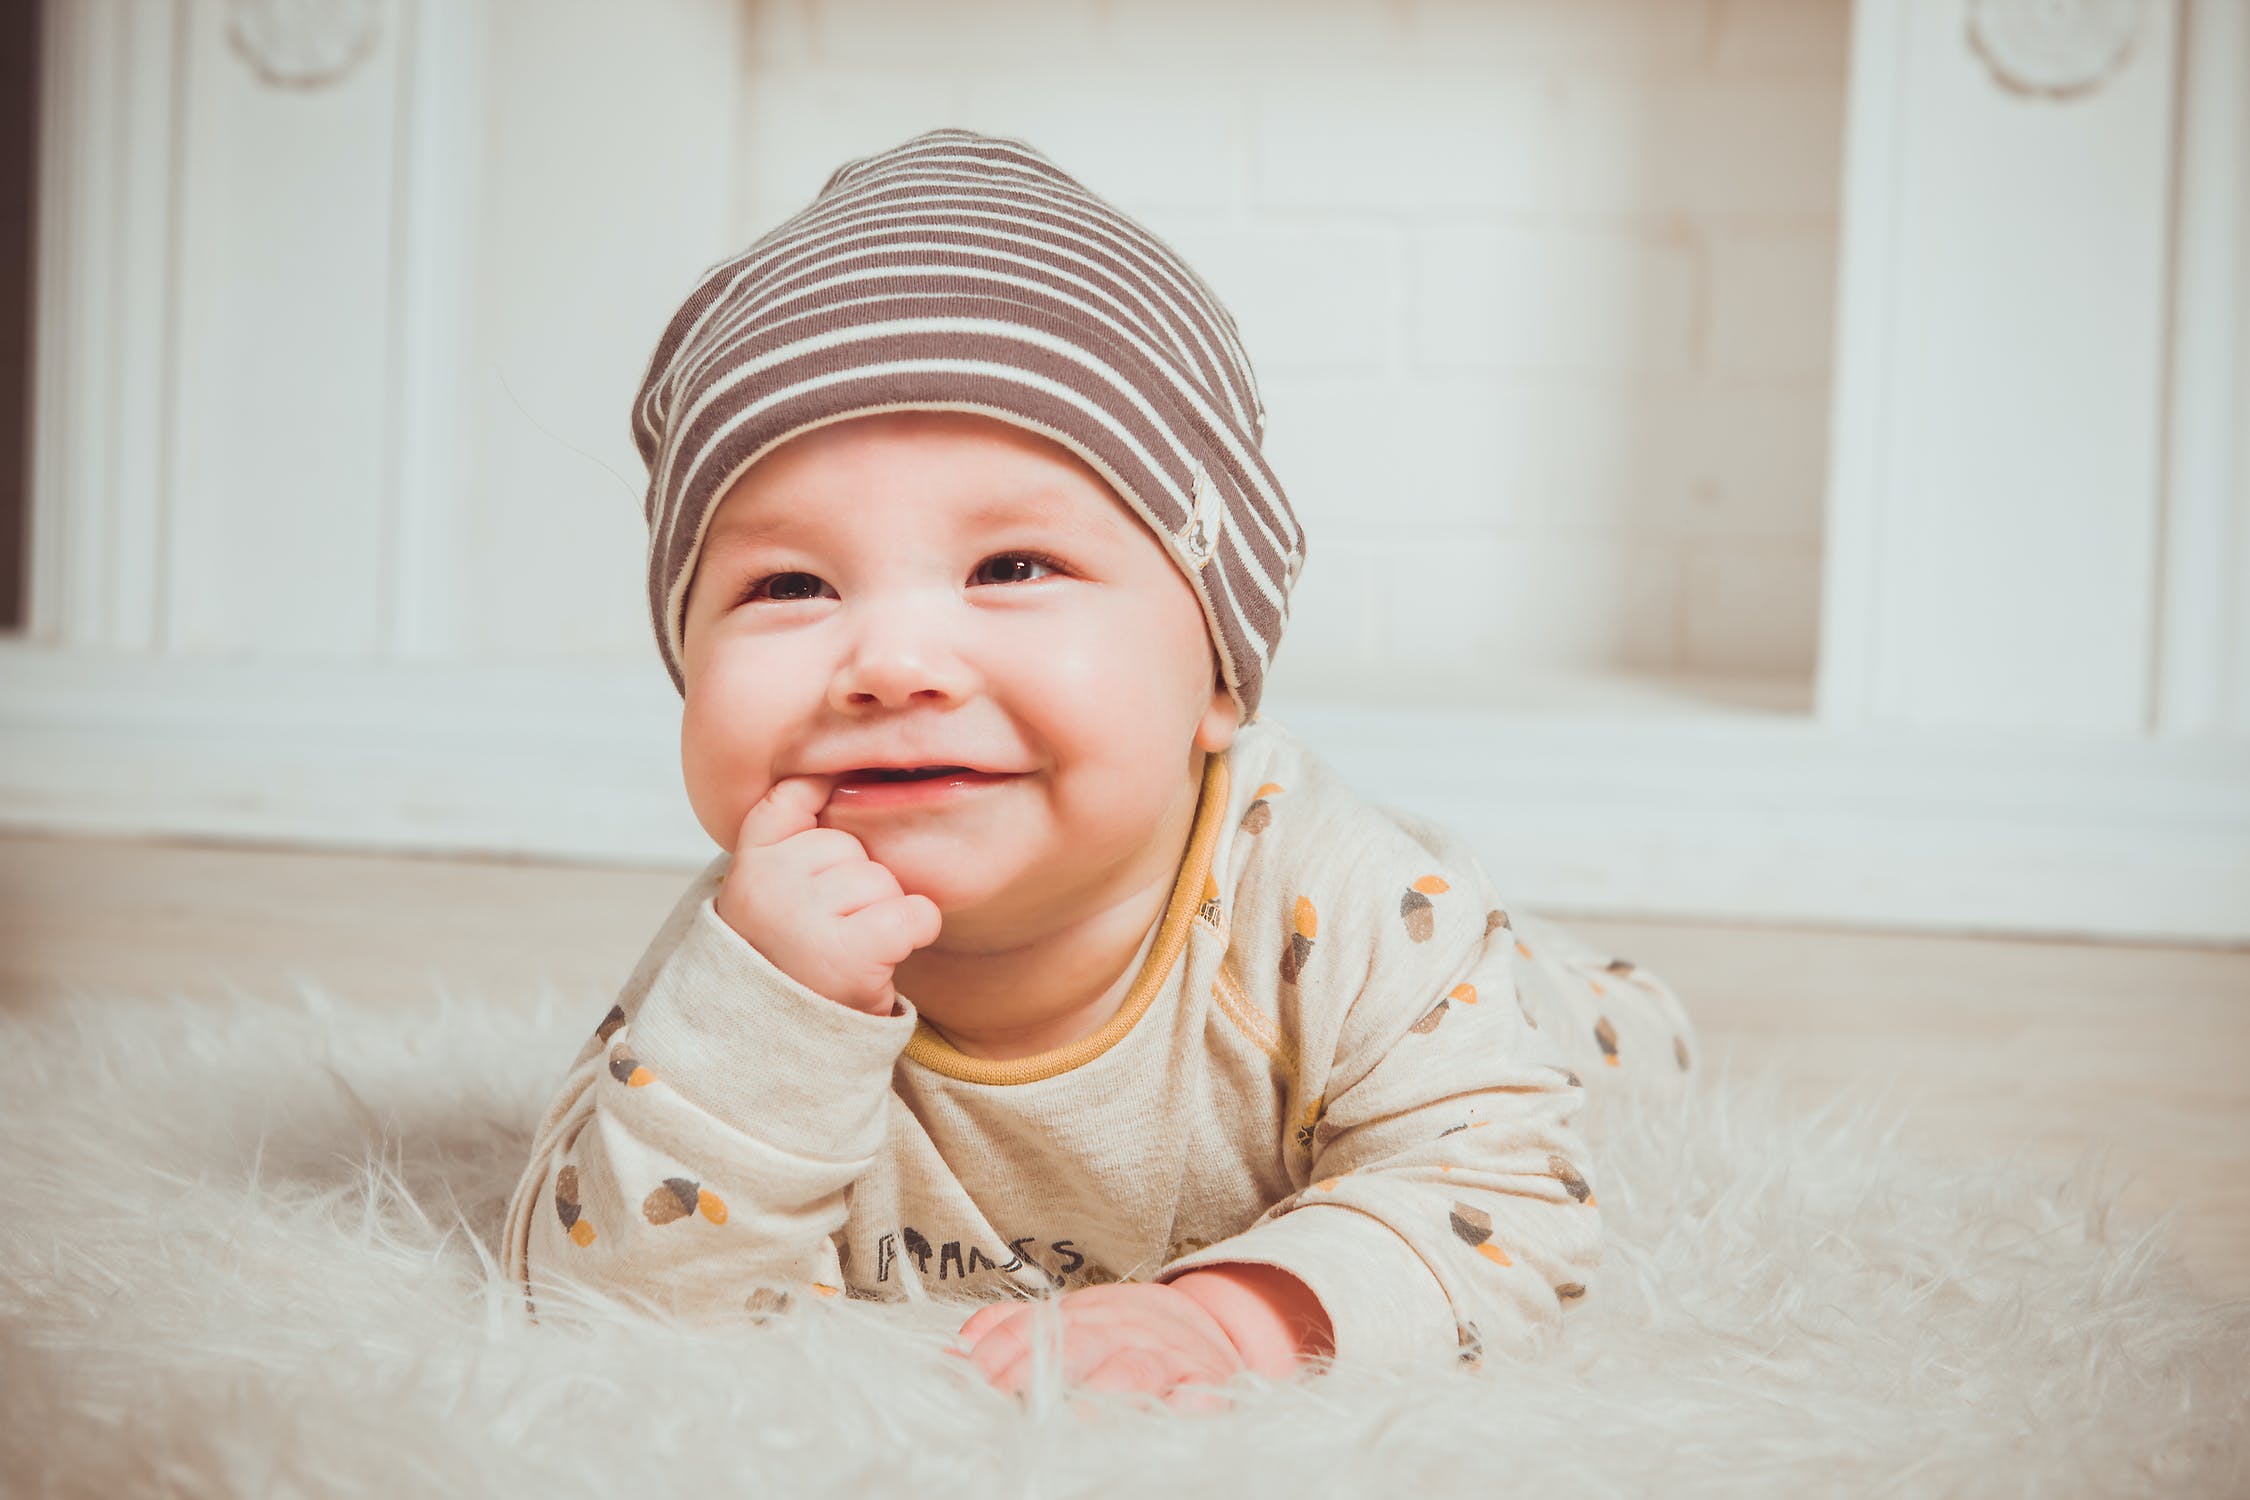 儿童摄影中宝宝在镜头前是如何表达的？